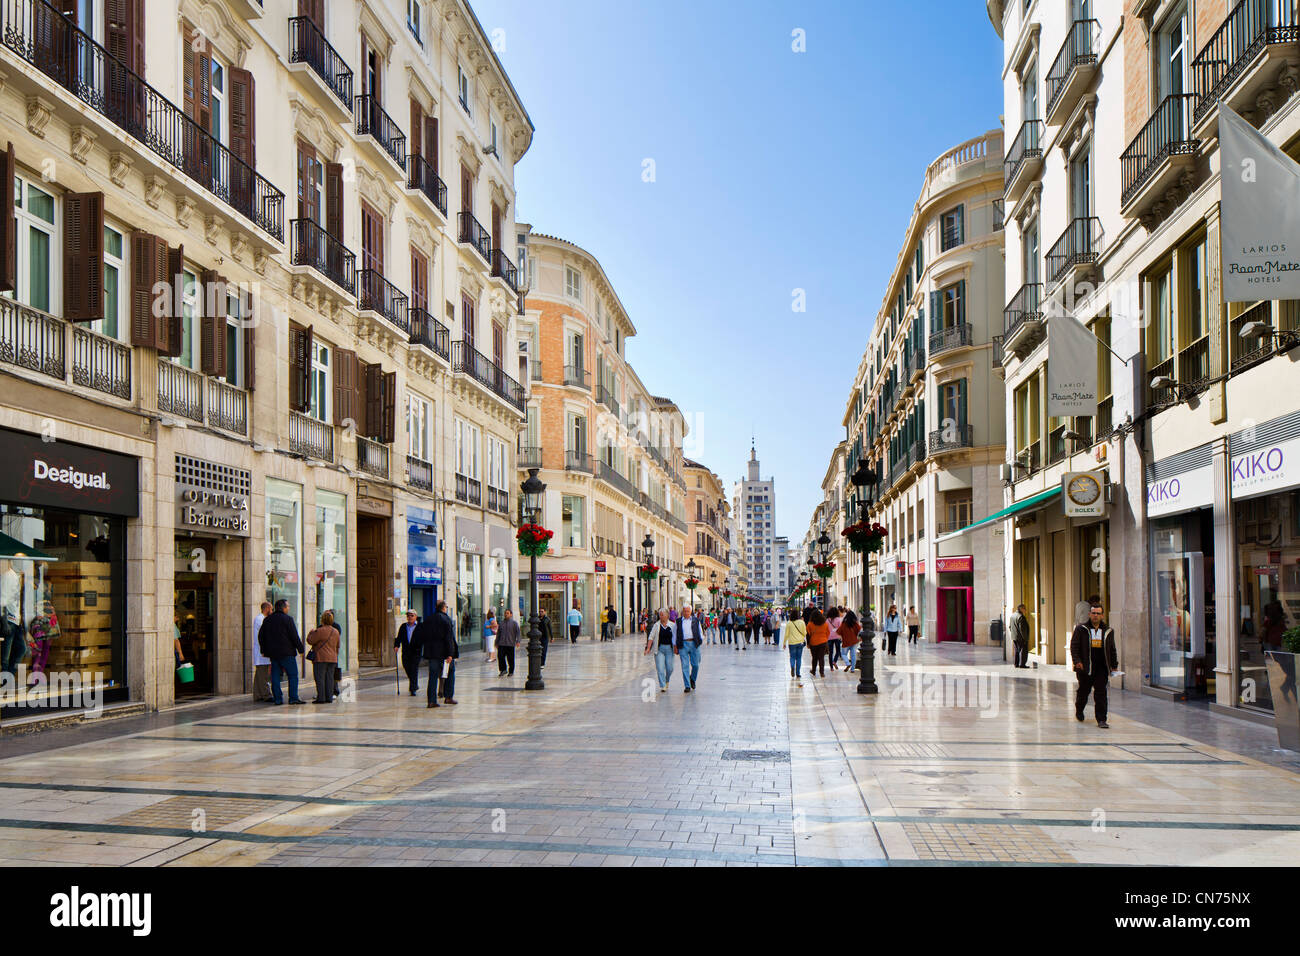 Boutiques de la Calle Marques de Larios, la rue commerçante principale, Malaga, Andalousie, Espagne Banque D'Images